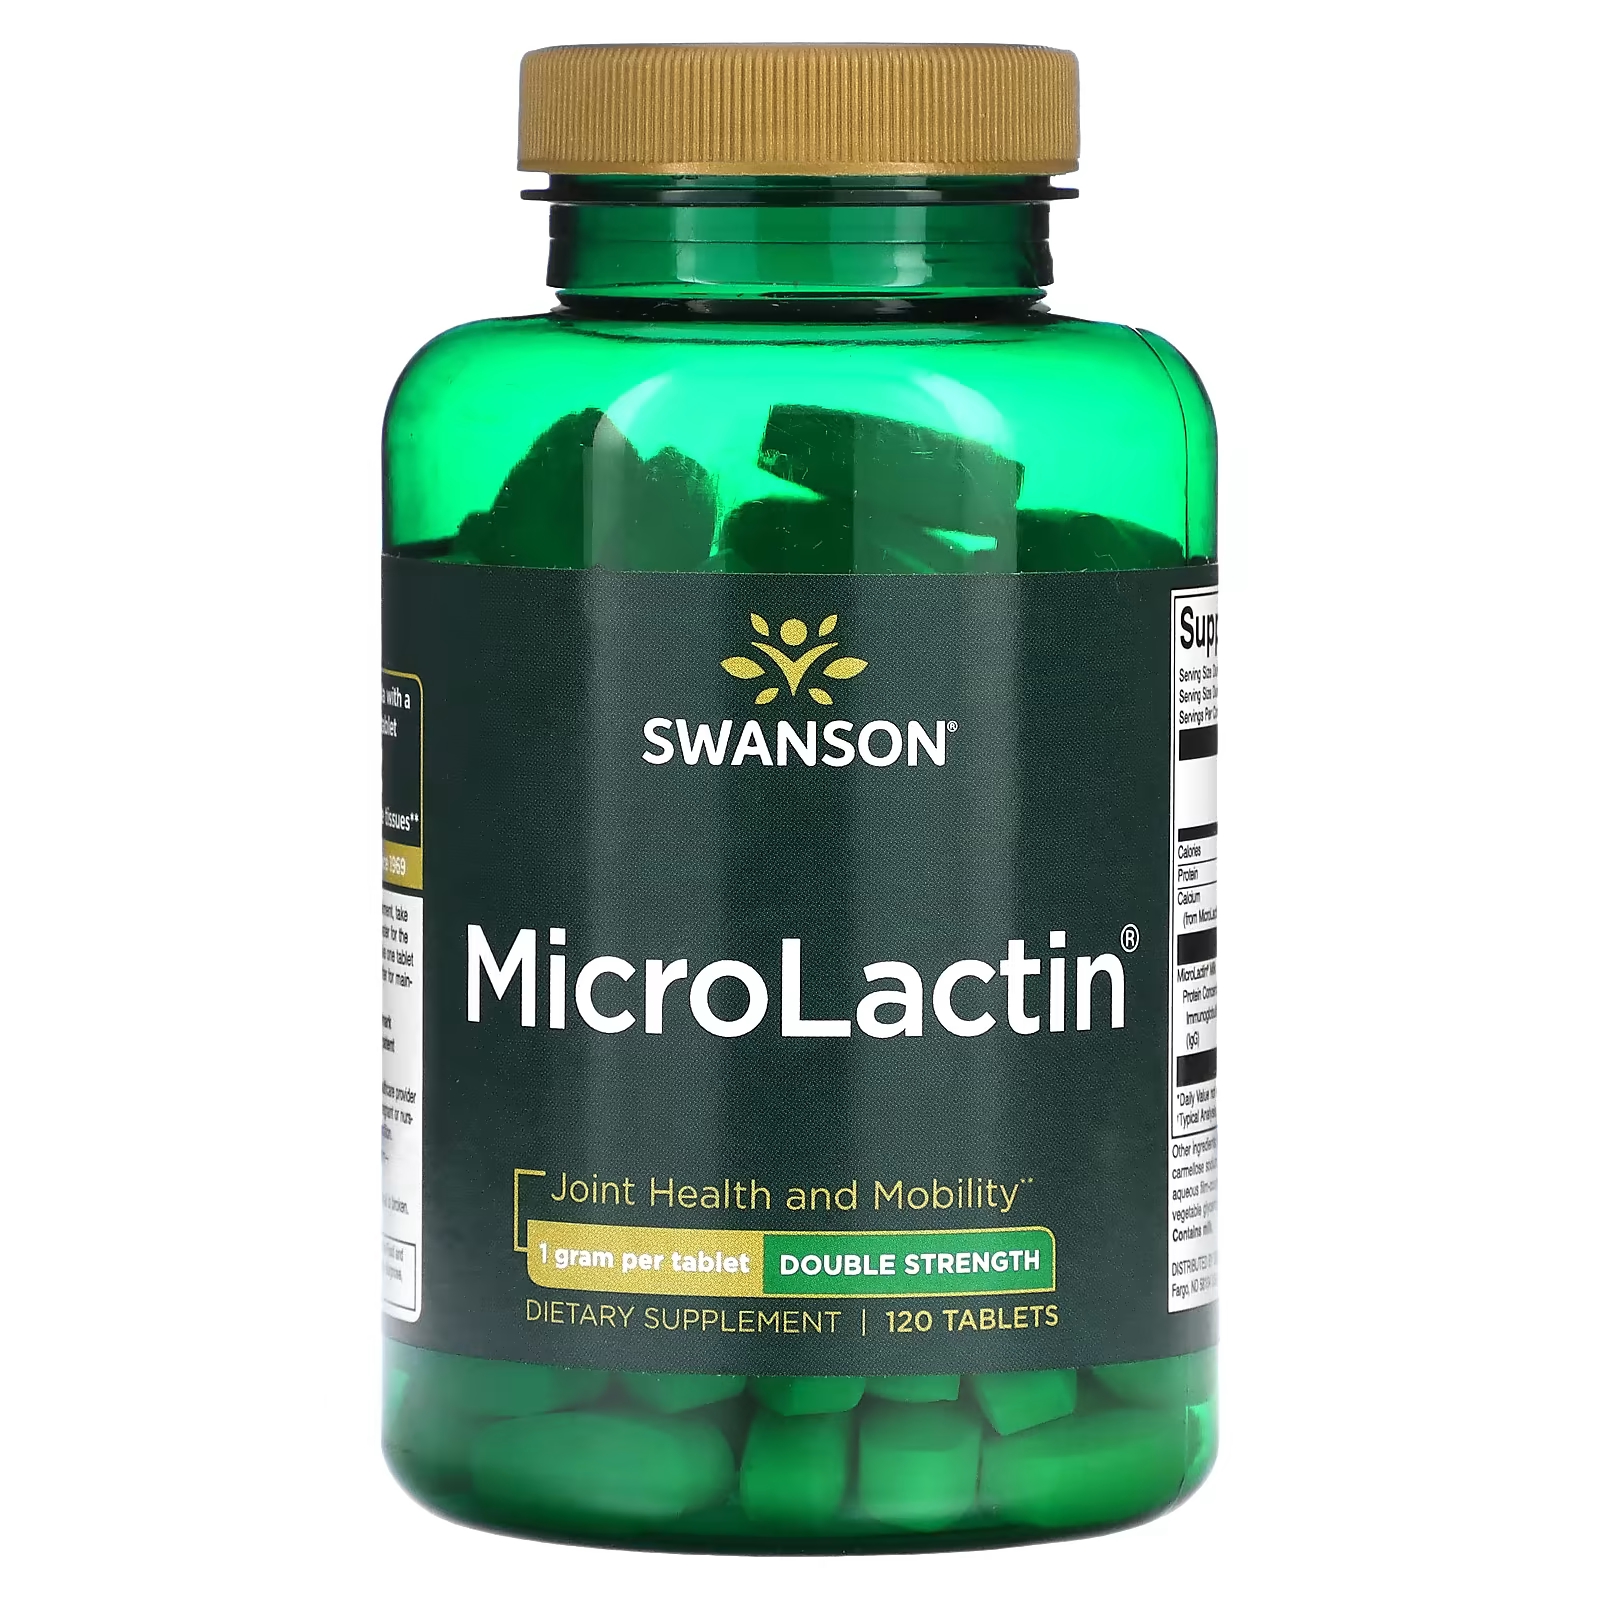 Пищевые добавки Swanson MicroLactin двойной силы, 120 таблеток вазей кристофер природные пищевые добавки